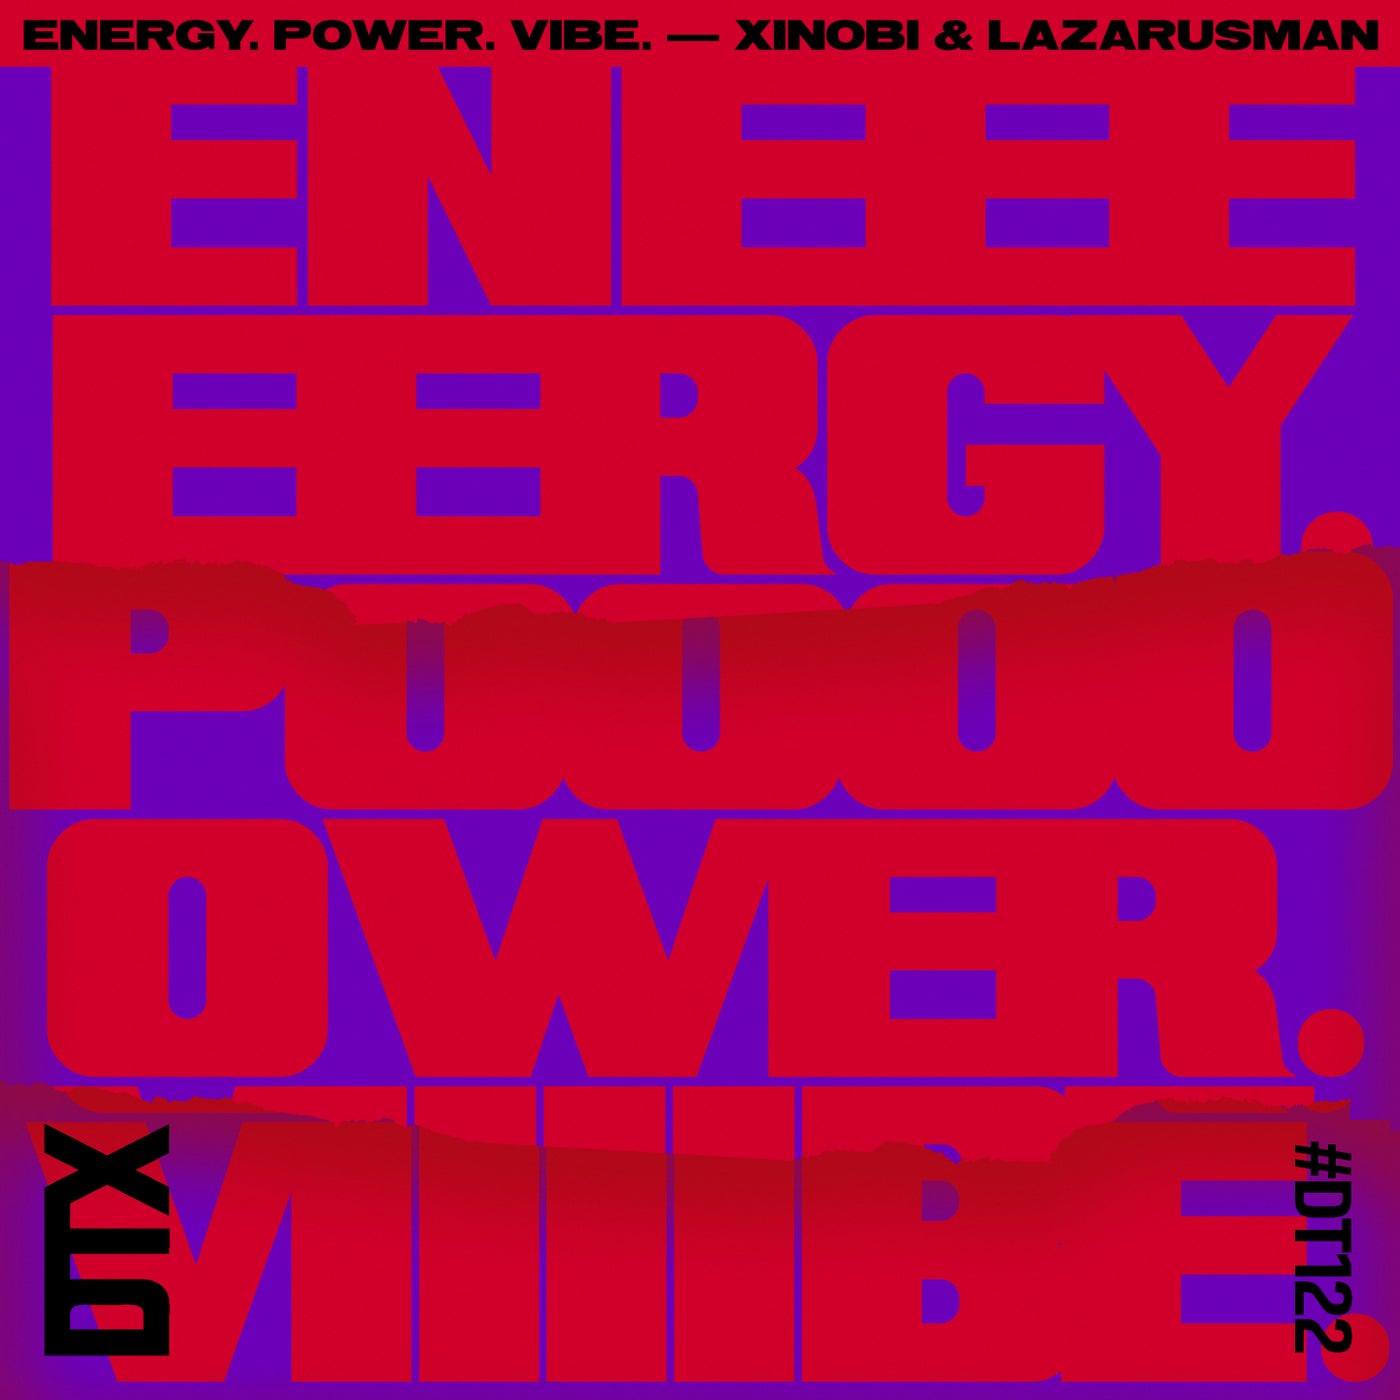 Energy. Power. Vibe.